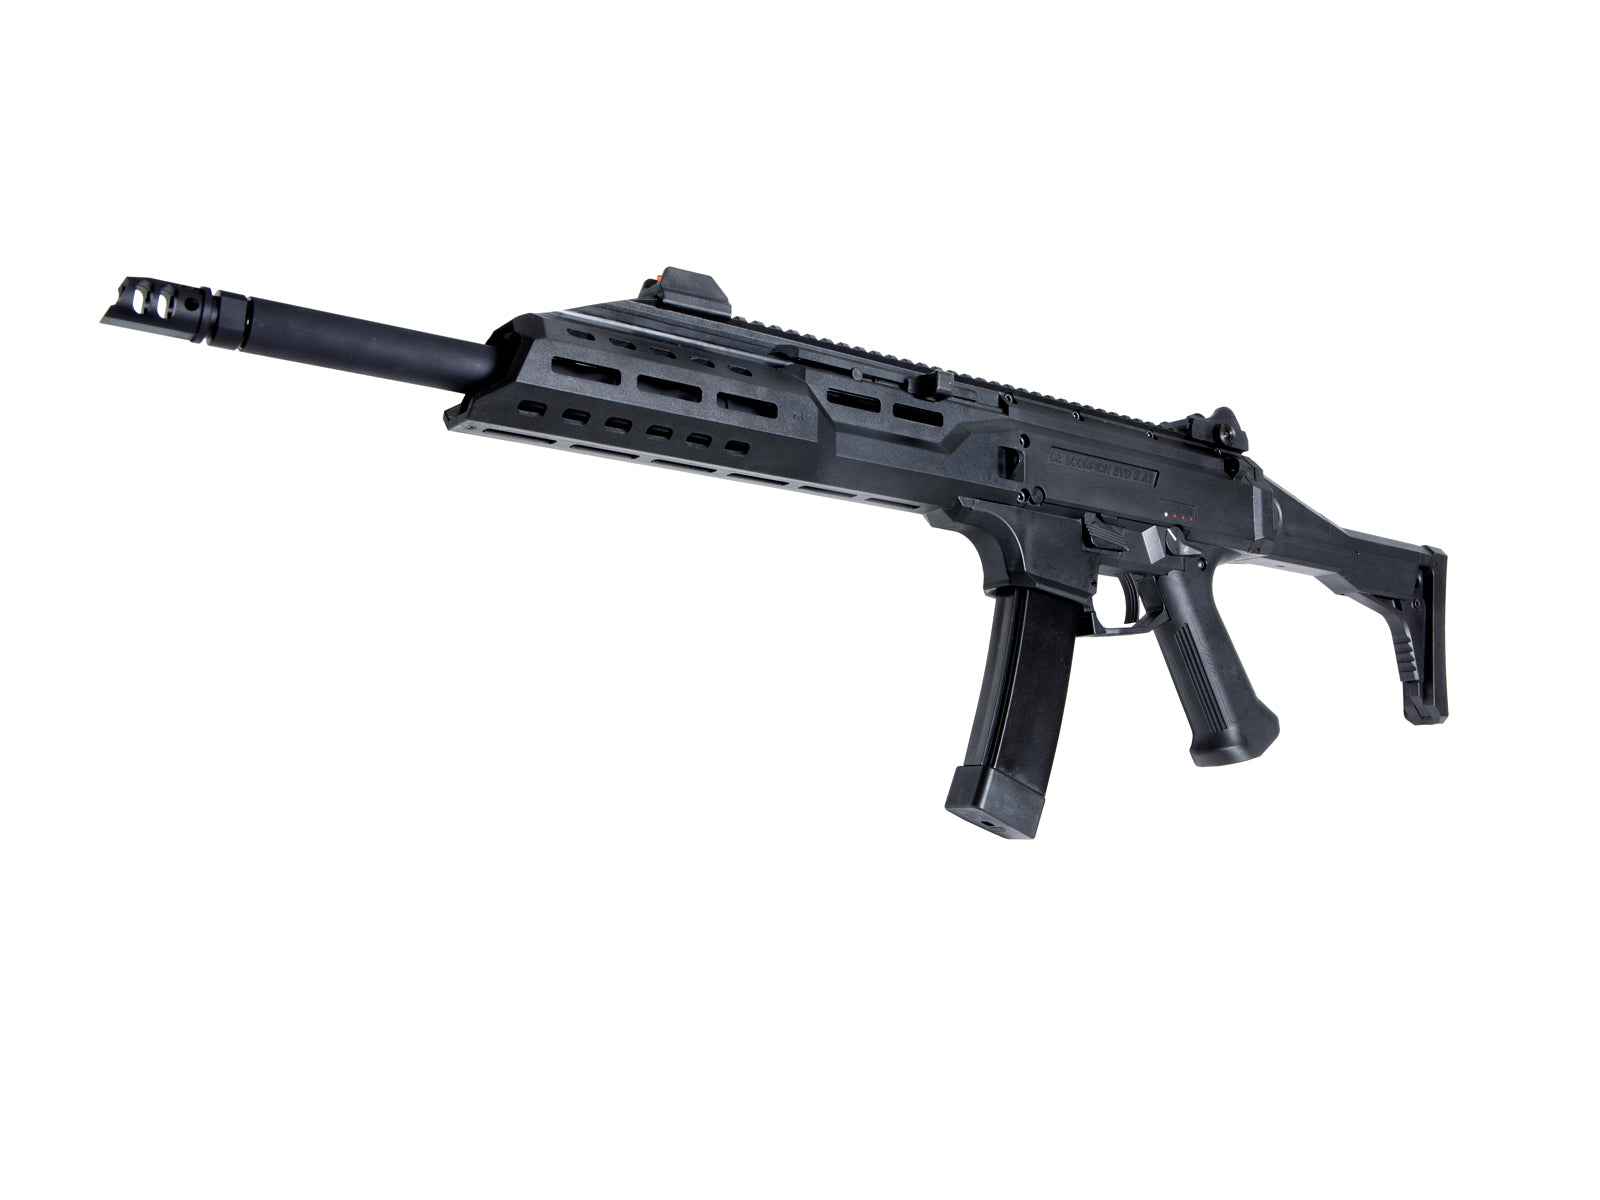 ASG CZ Scorpion Evo 3 A1 AEG Airsoft Rifle – Carbine Ver.